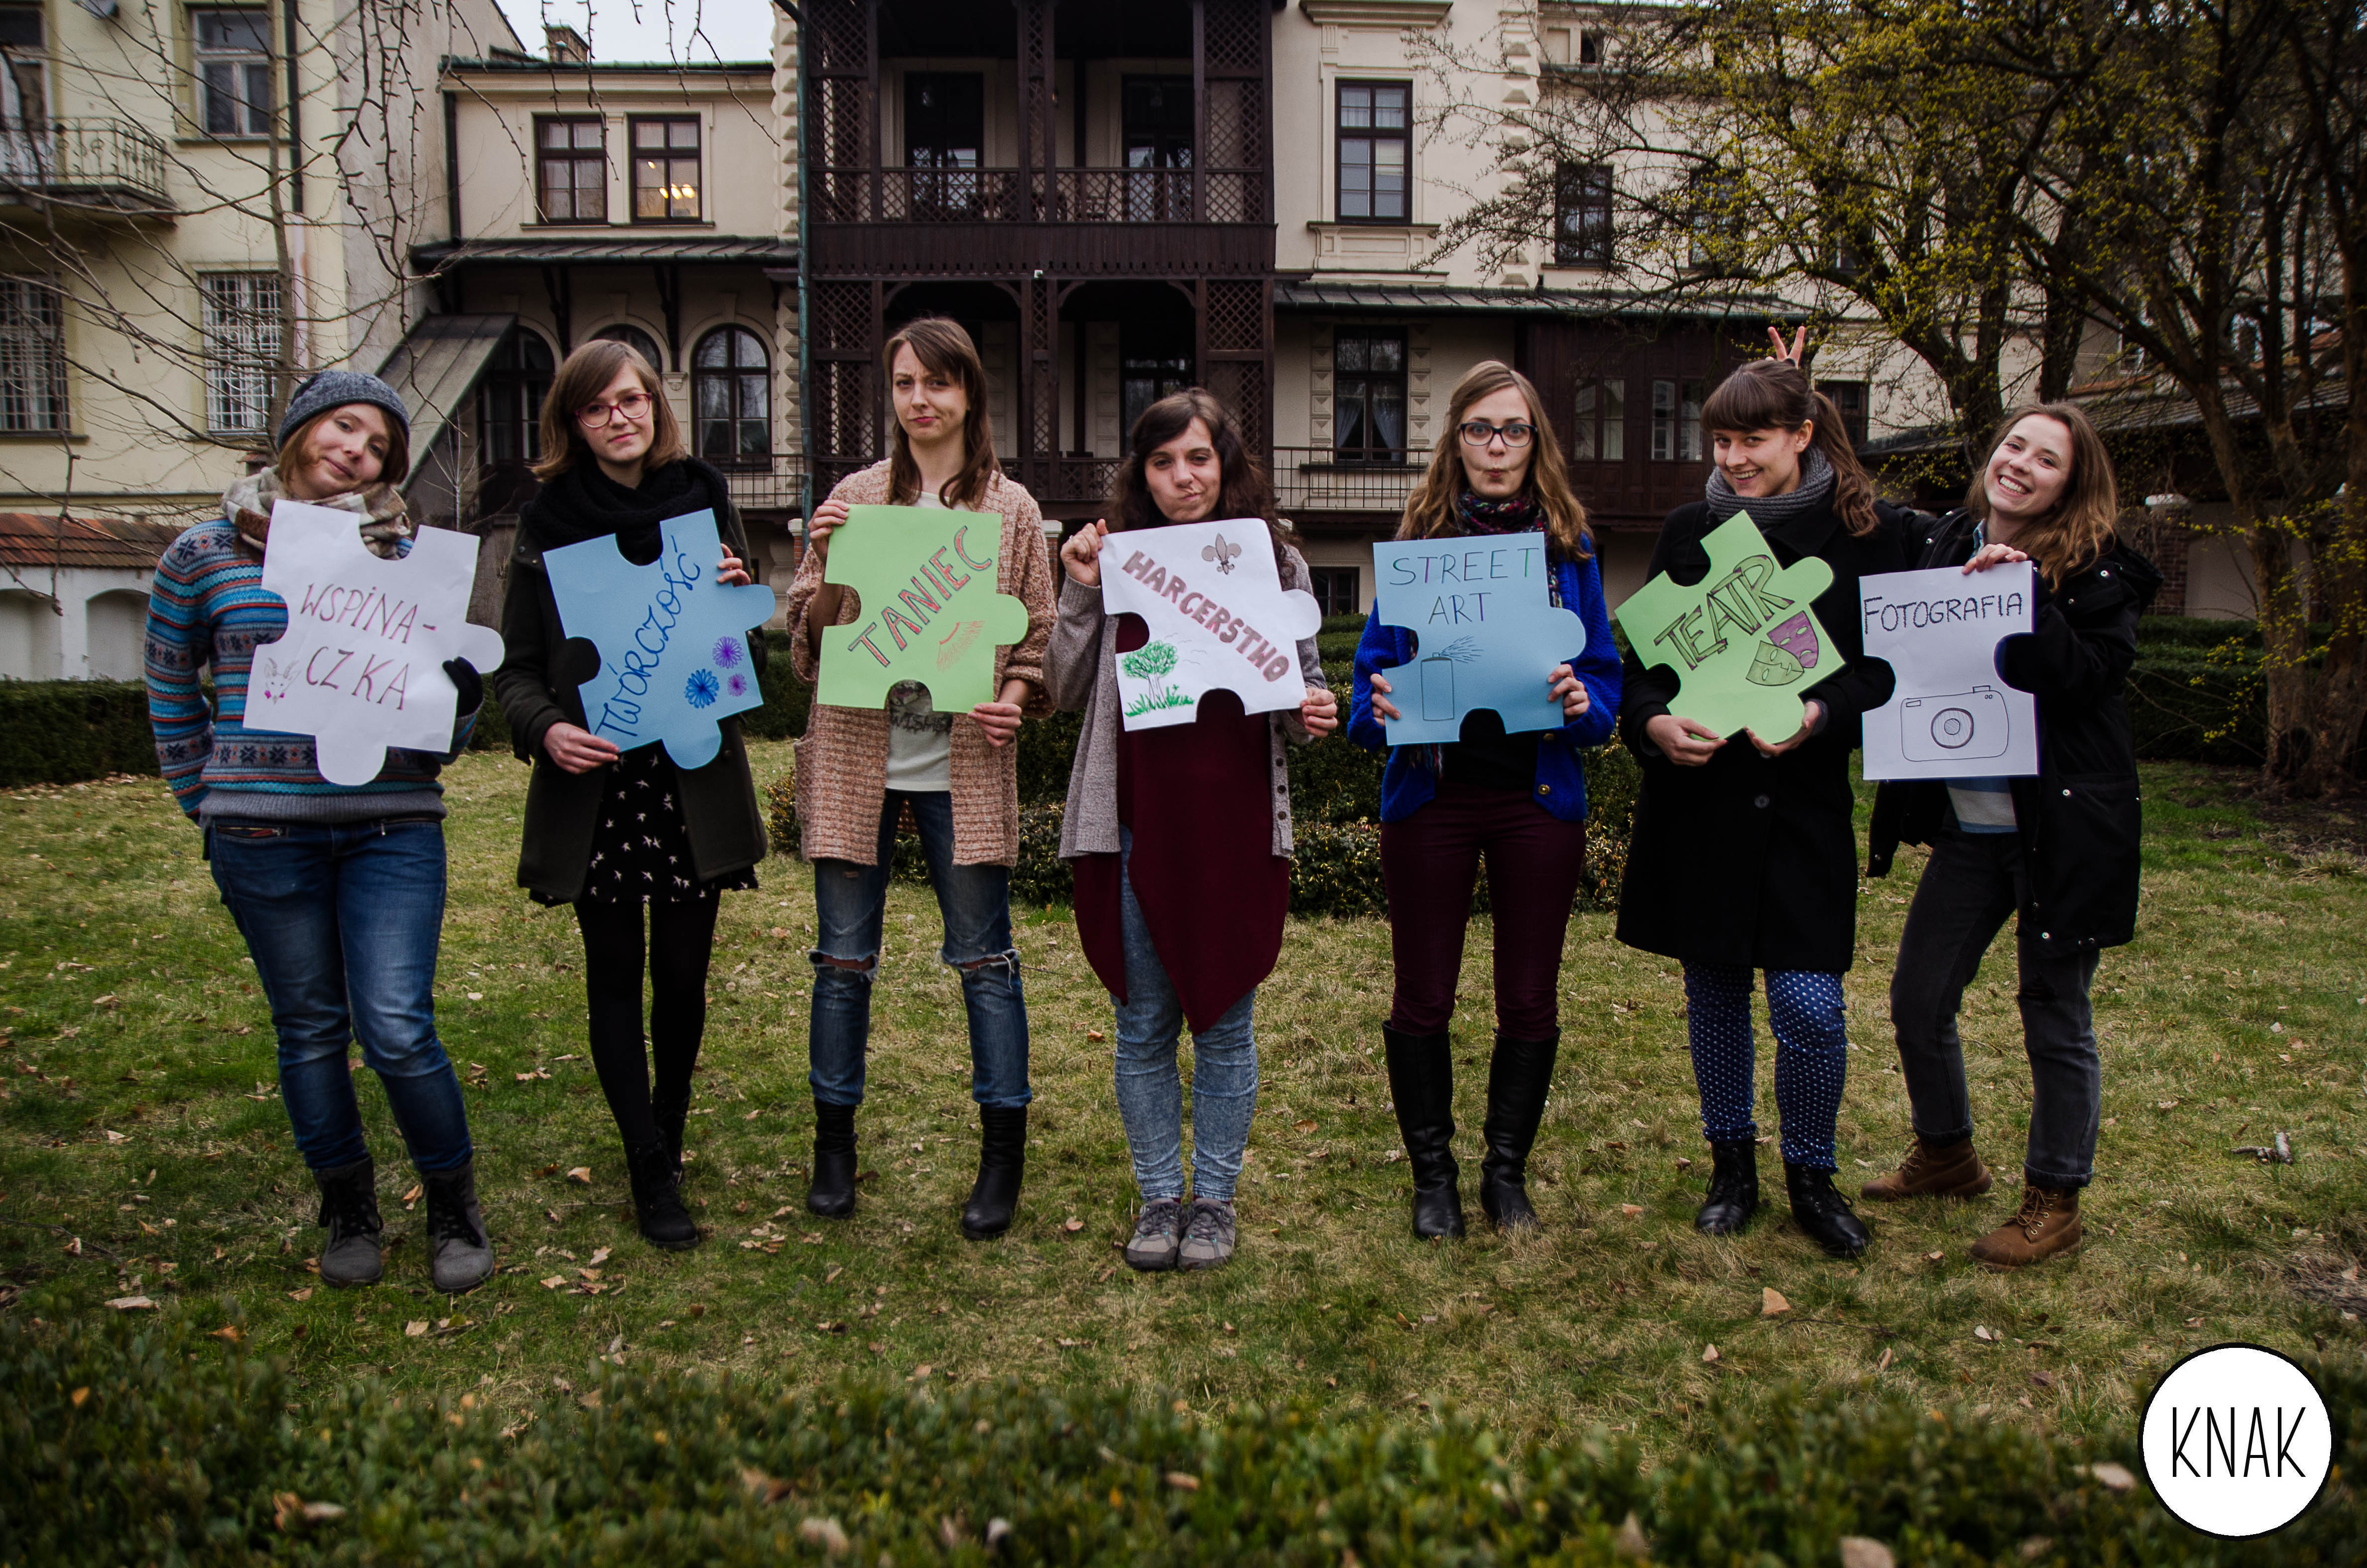 Zdjęcie członkow koła naukowego. Na zdjęciu siedem osób, trzymających transparenty z hasłami: "wspinaczka", "twórczość", "taniec", "harcerstwo", "streetart", "teatr", "fotografia".